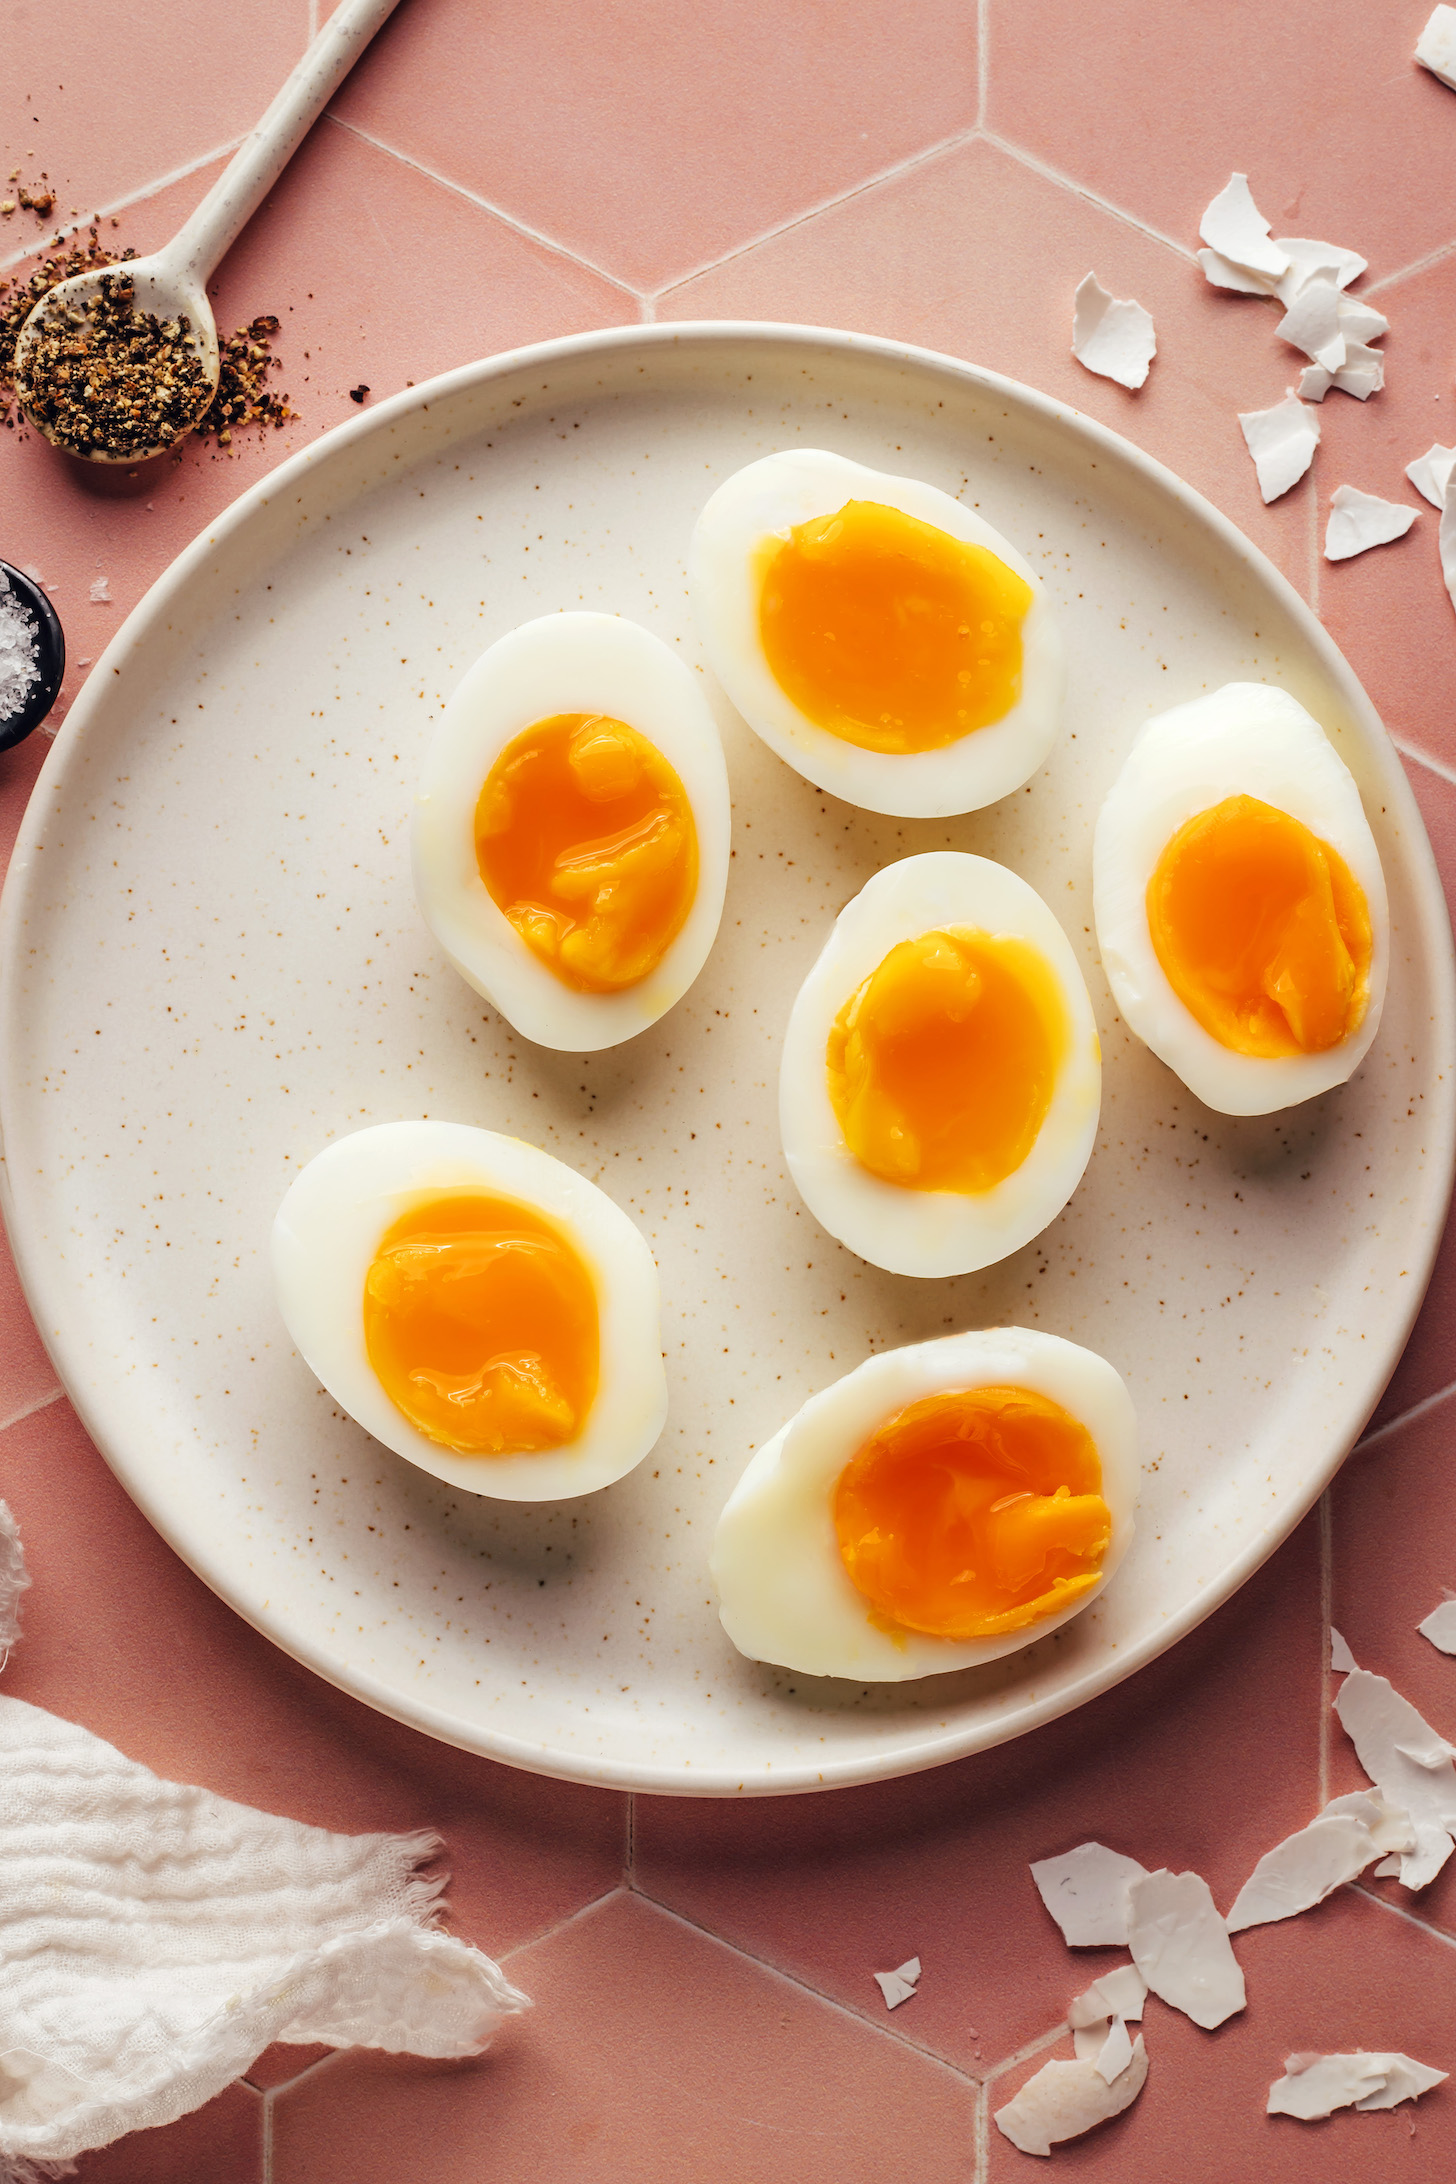 Тарелка яиц с джемом с идеально проваренными белками и джемом в центре